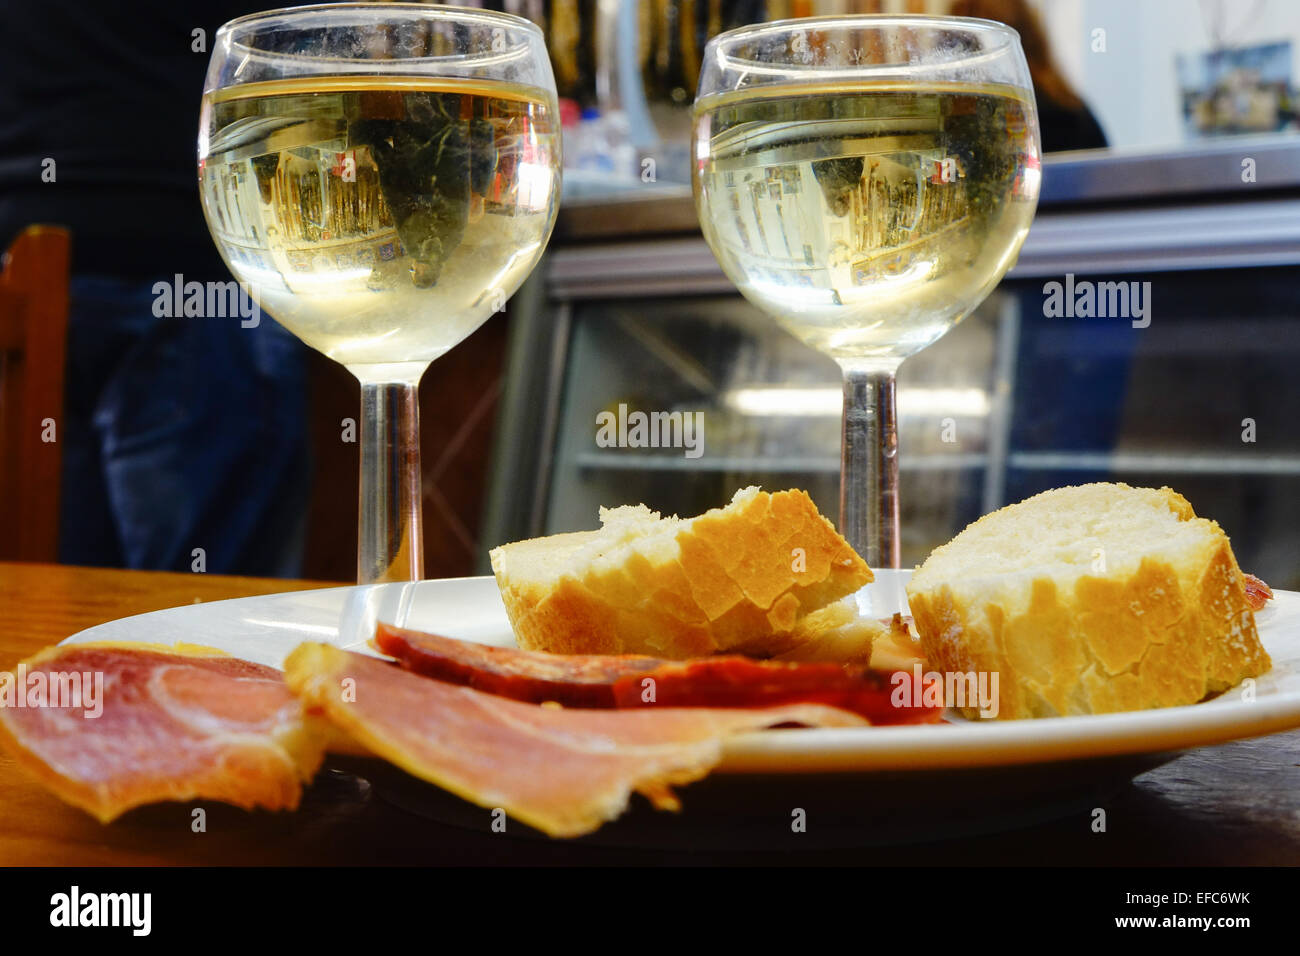 Zwei Gläser Wein, Brot, Schinken und Chorizo Tapas Bar Tisch, Benidorm, Costa Blanca, Spanien. Stockfoto